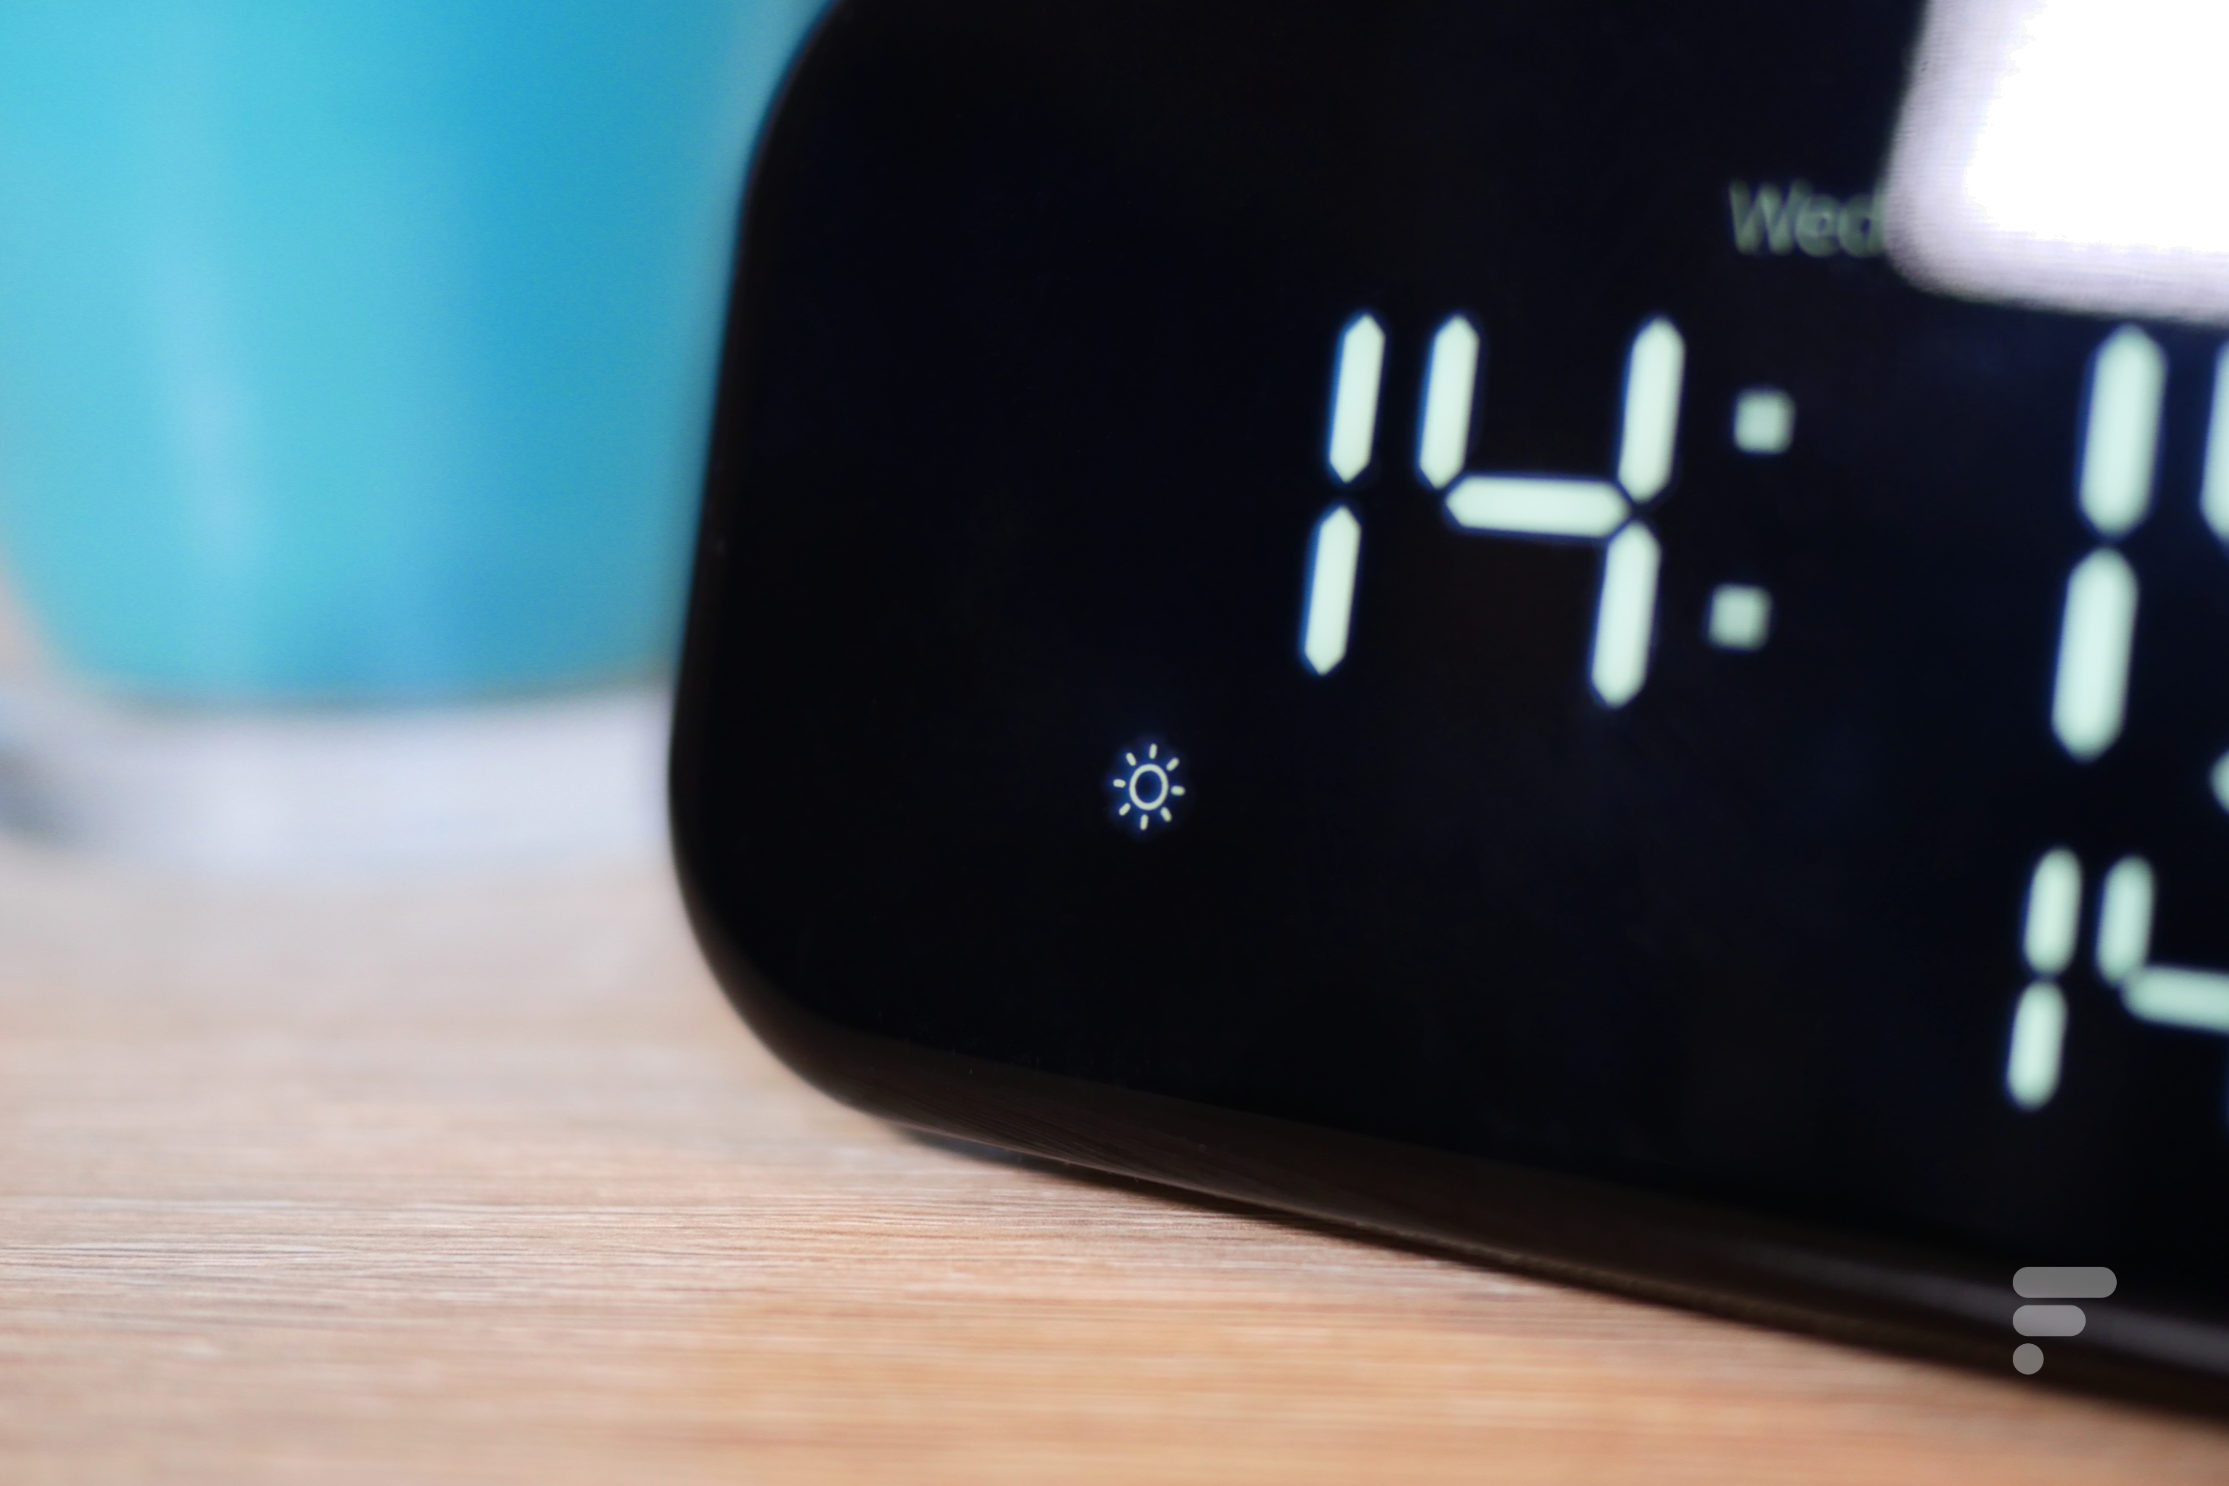 Le réveil connecté Lenovo Smart Clock est à moitié prix